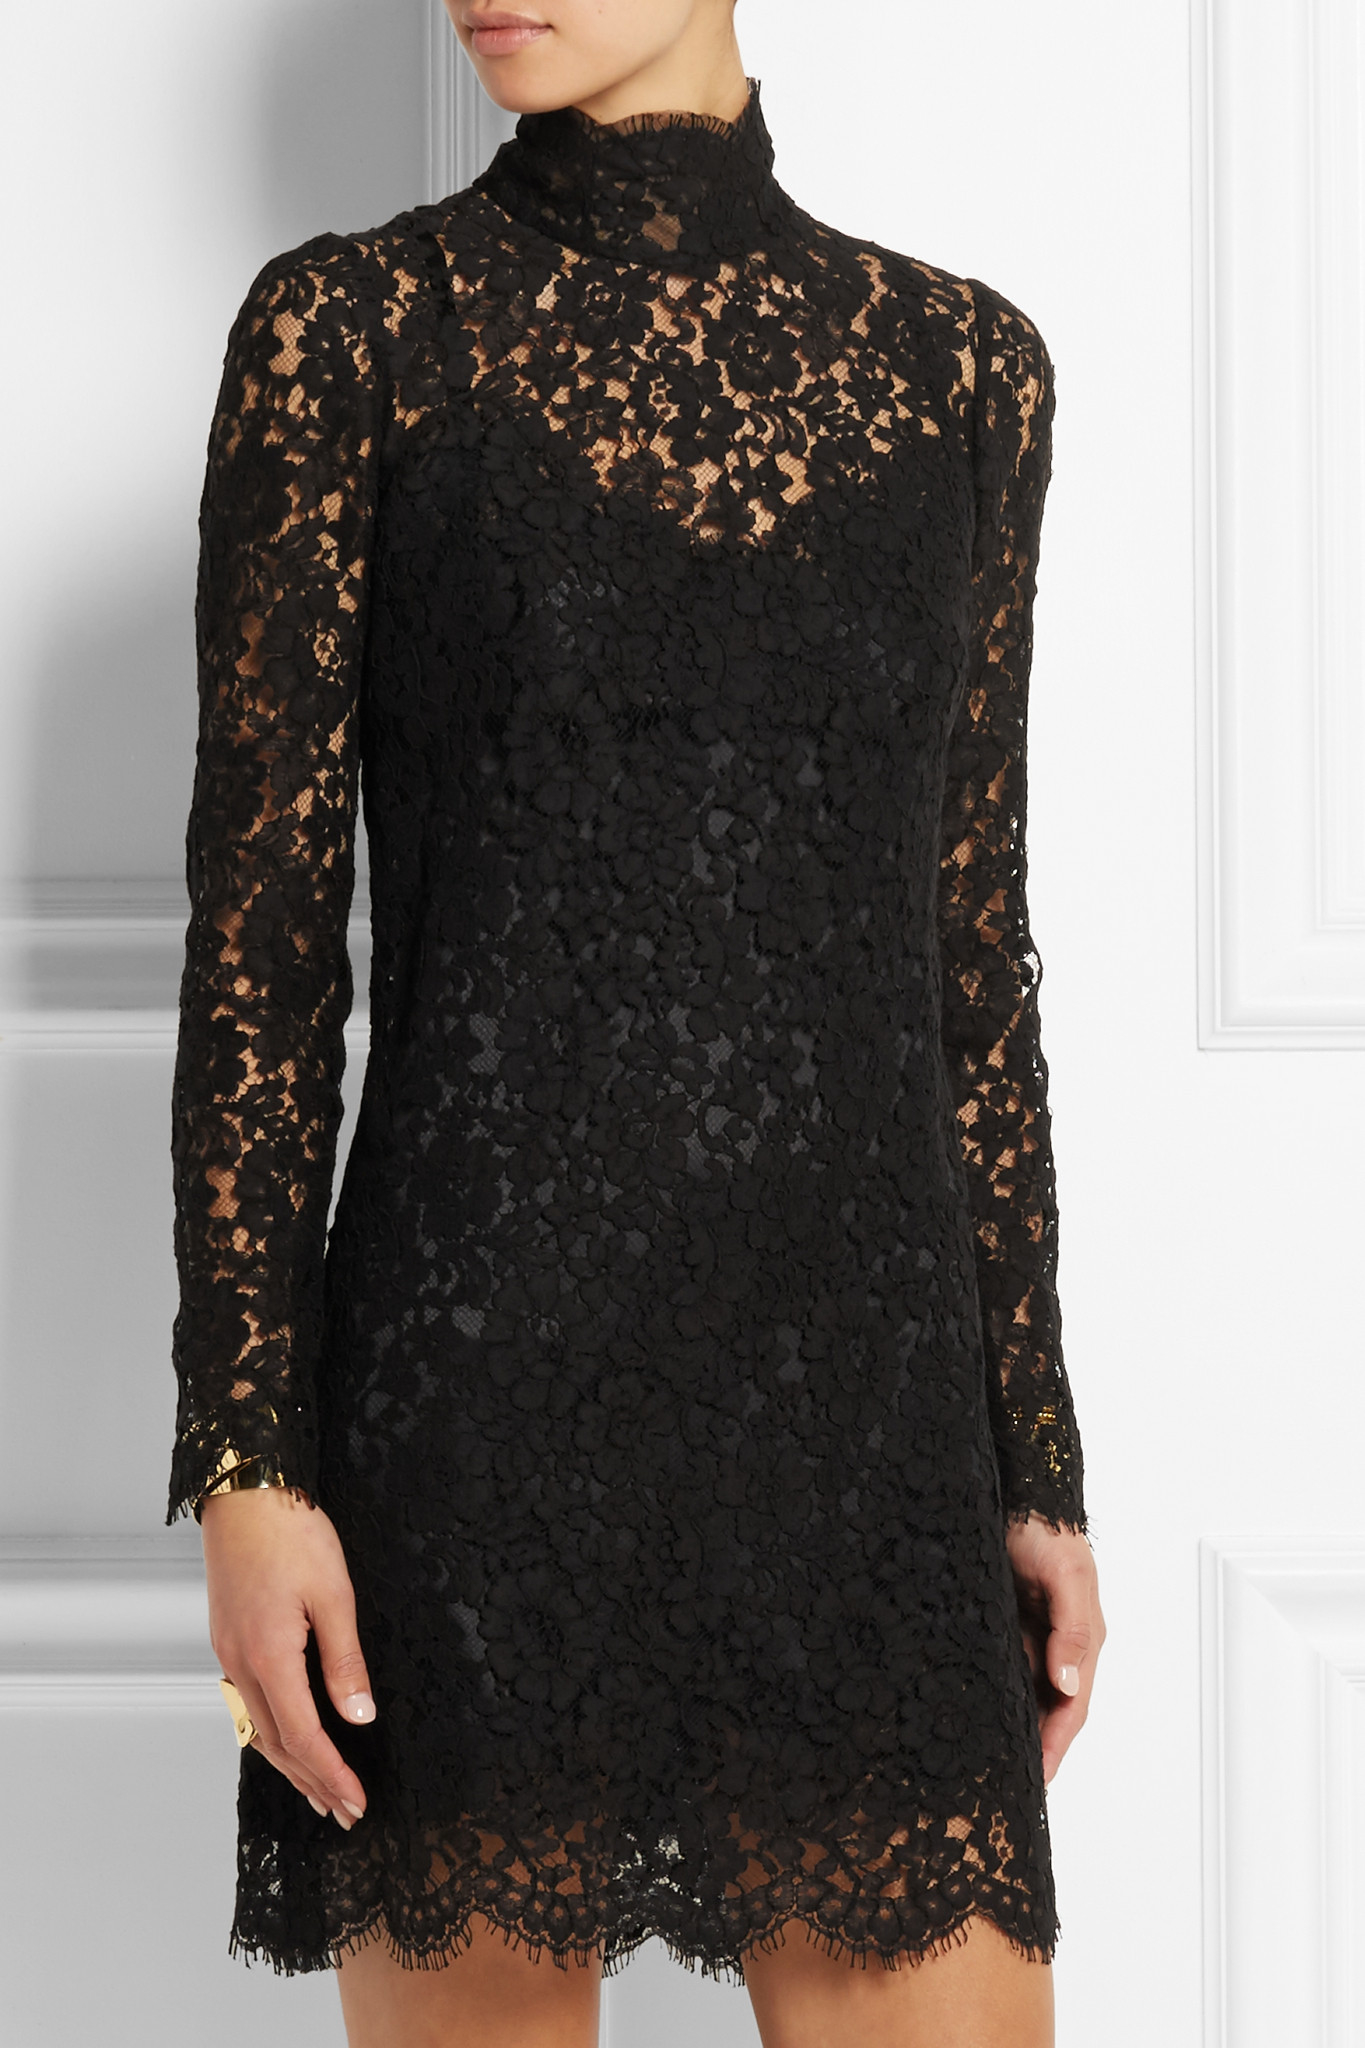 Dolce & gabbana Cotton-blend Guipure Lace Mini Dress in Black | Lyst